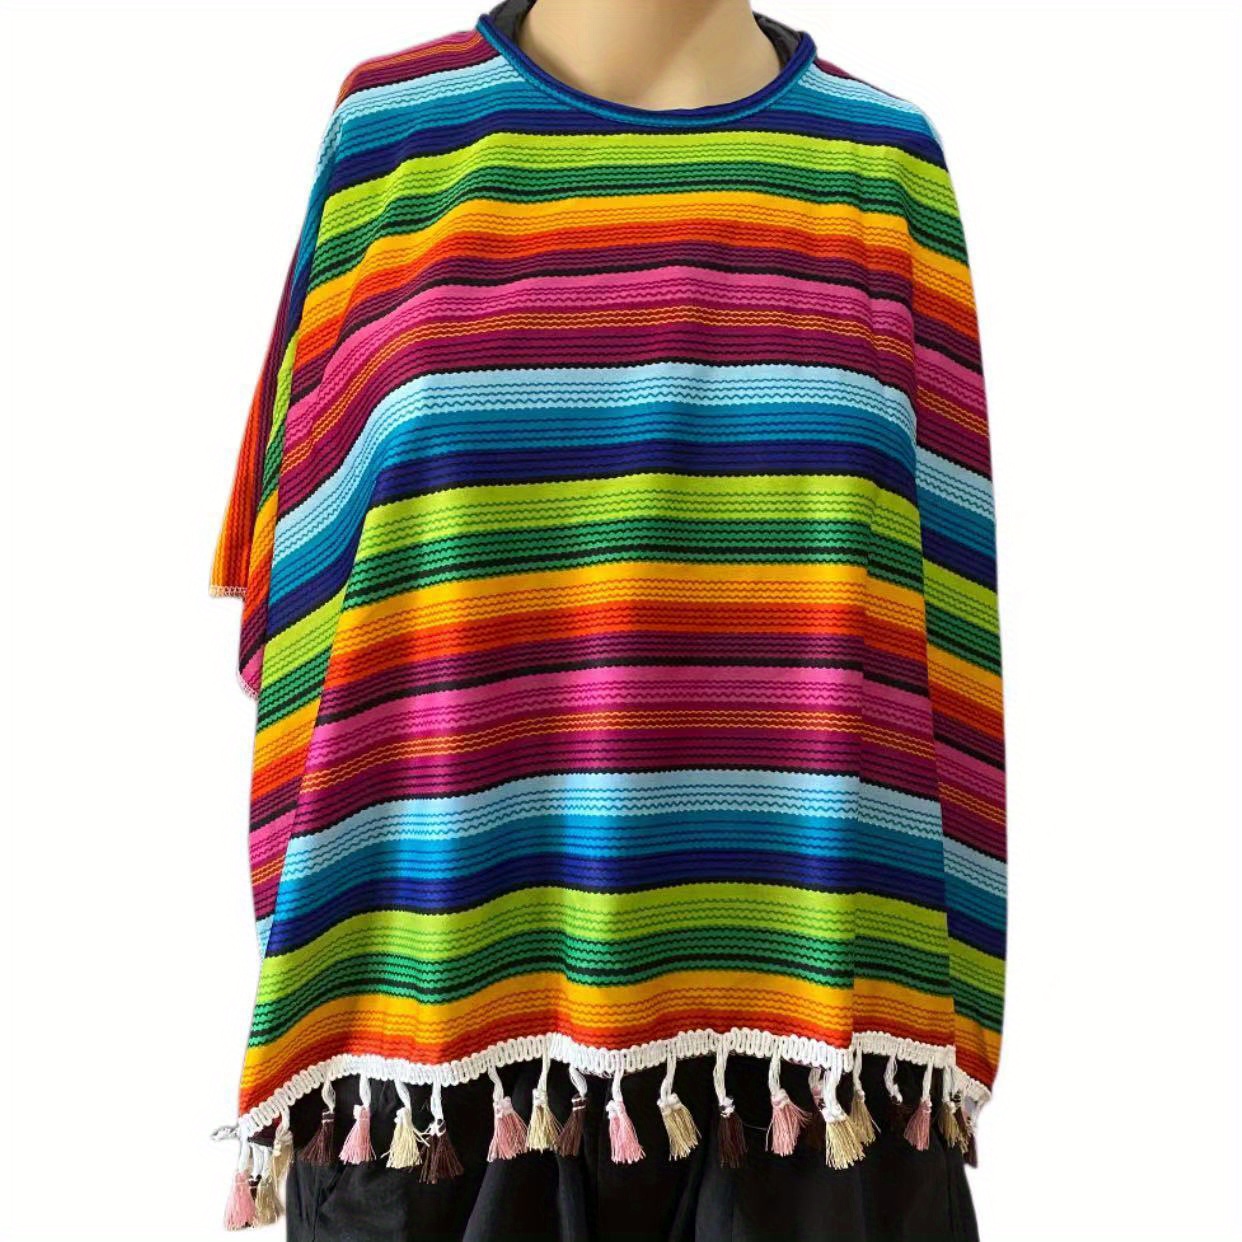 Costume o poncho messicano multicolore per uomo